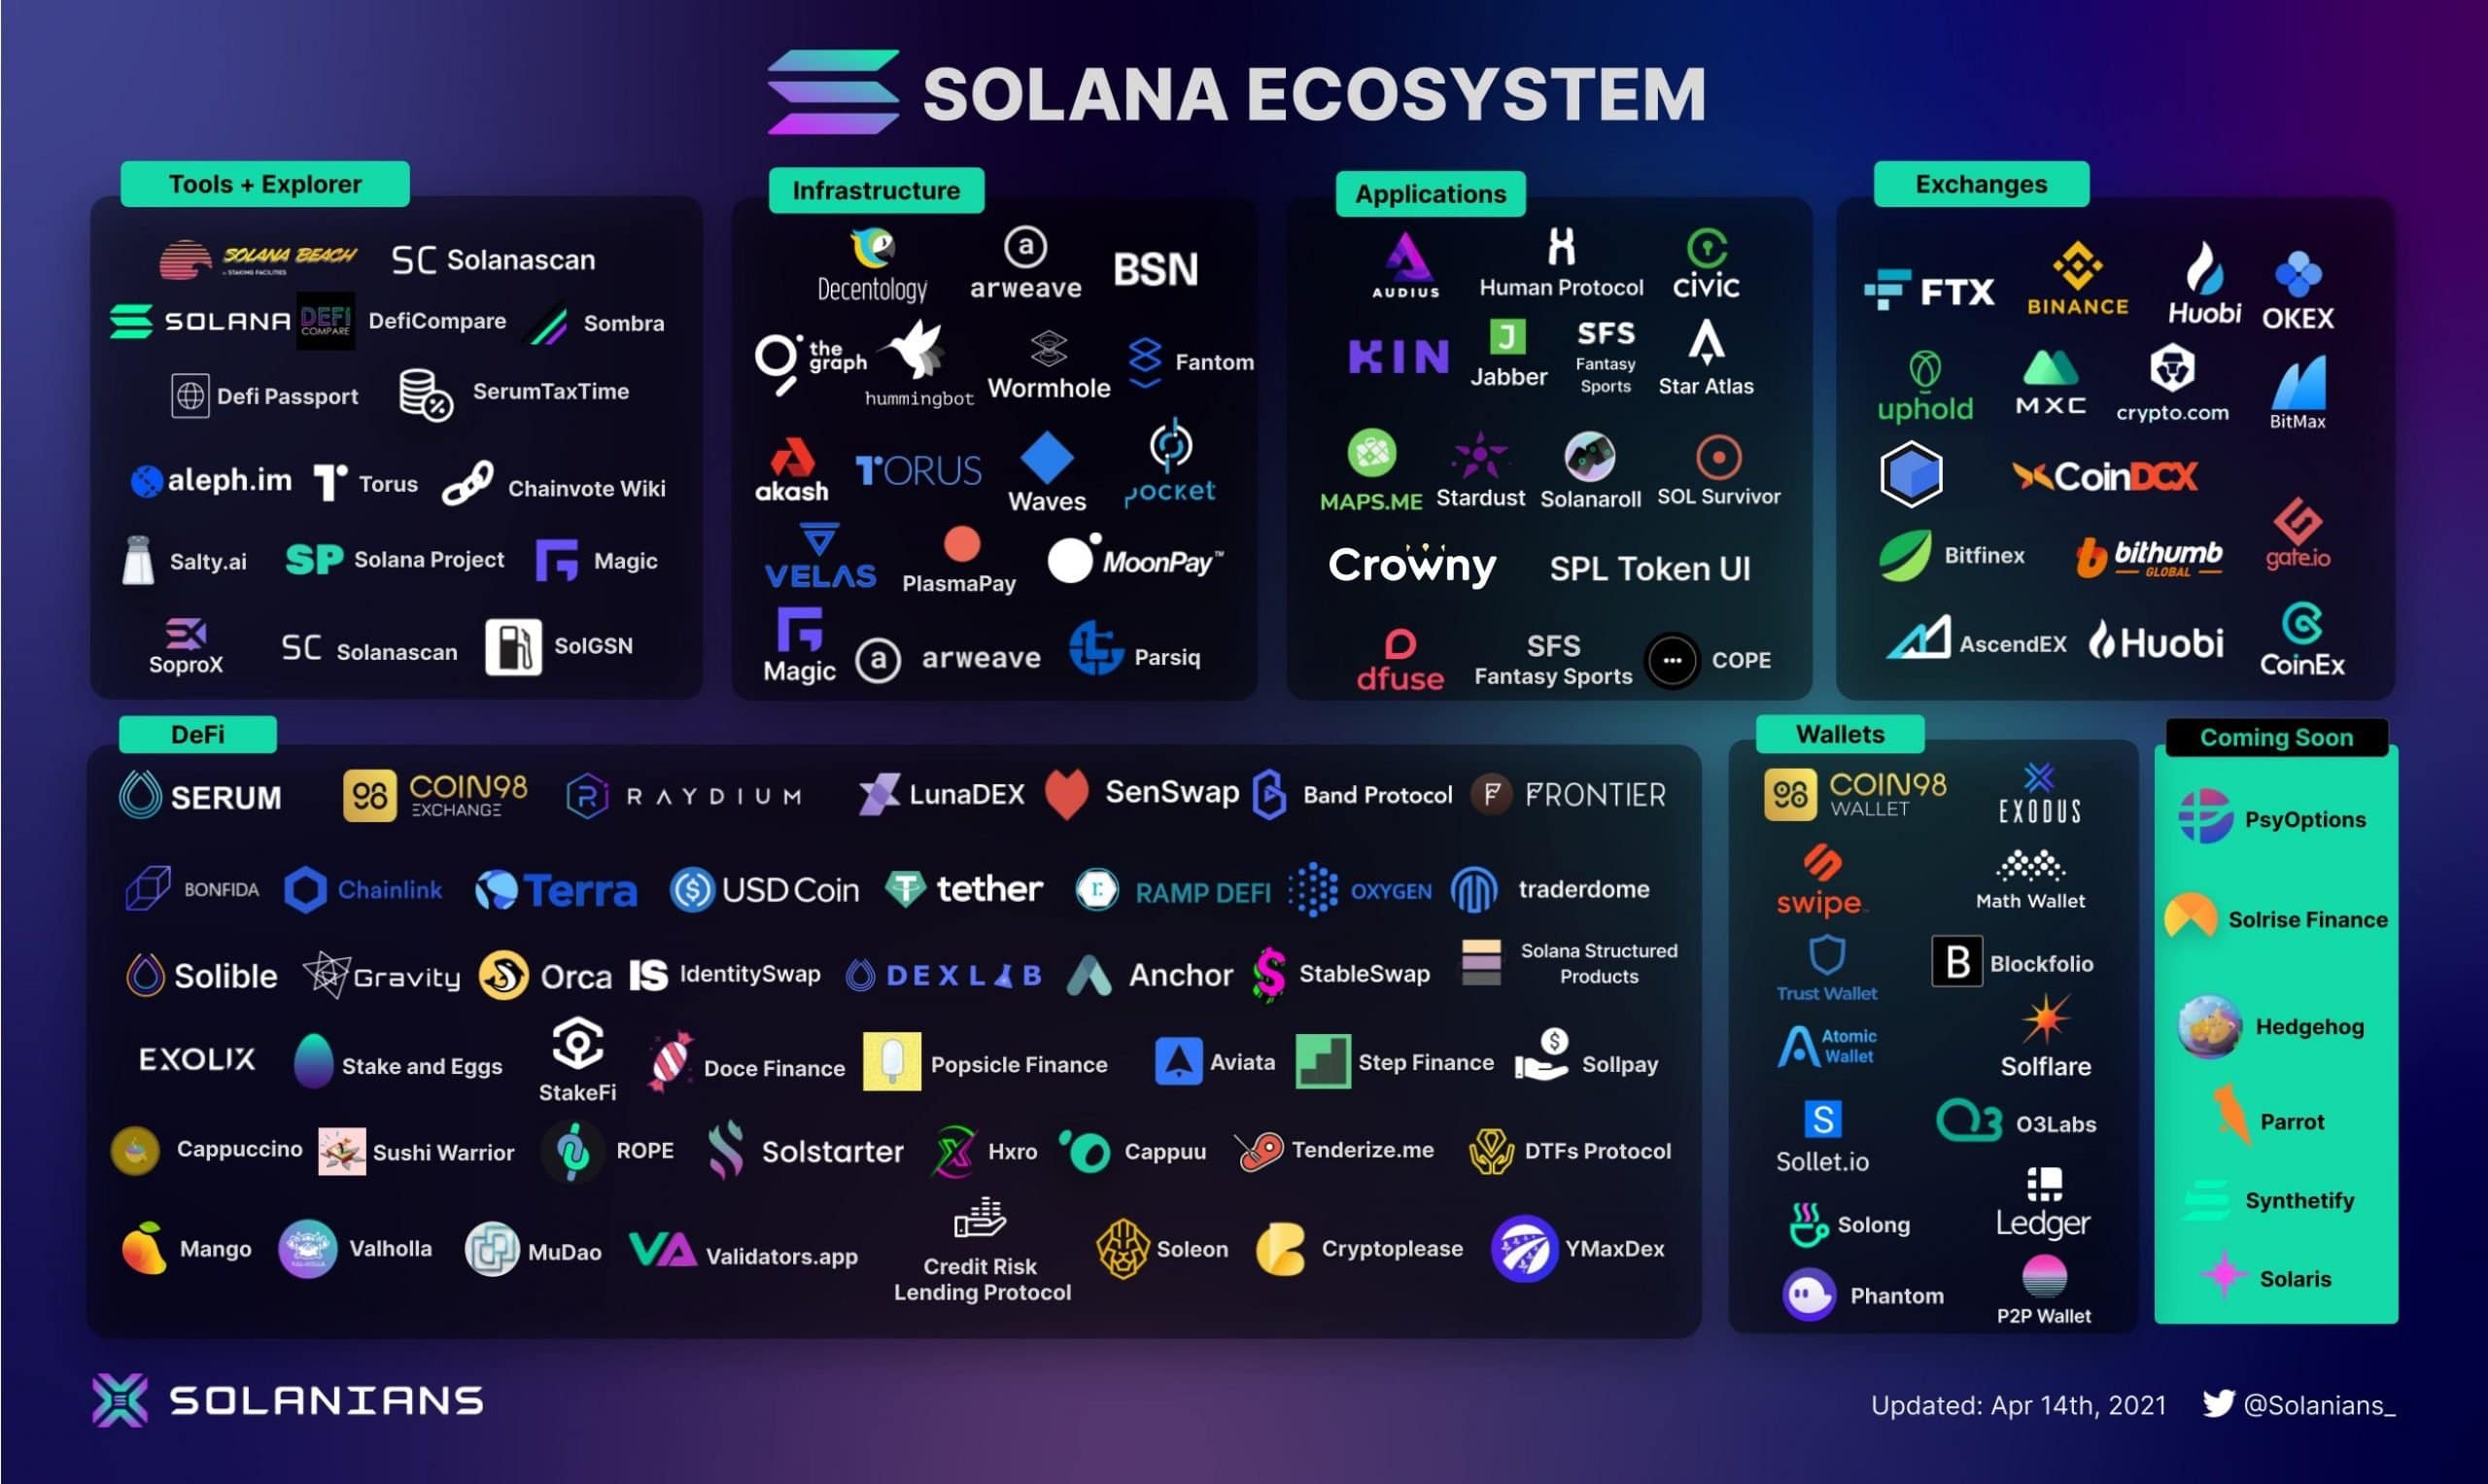 Solana's Ecosystem